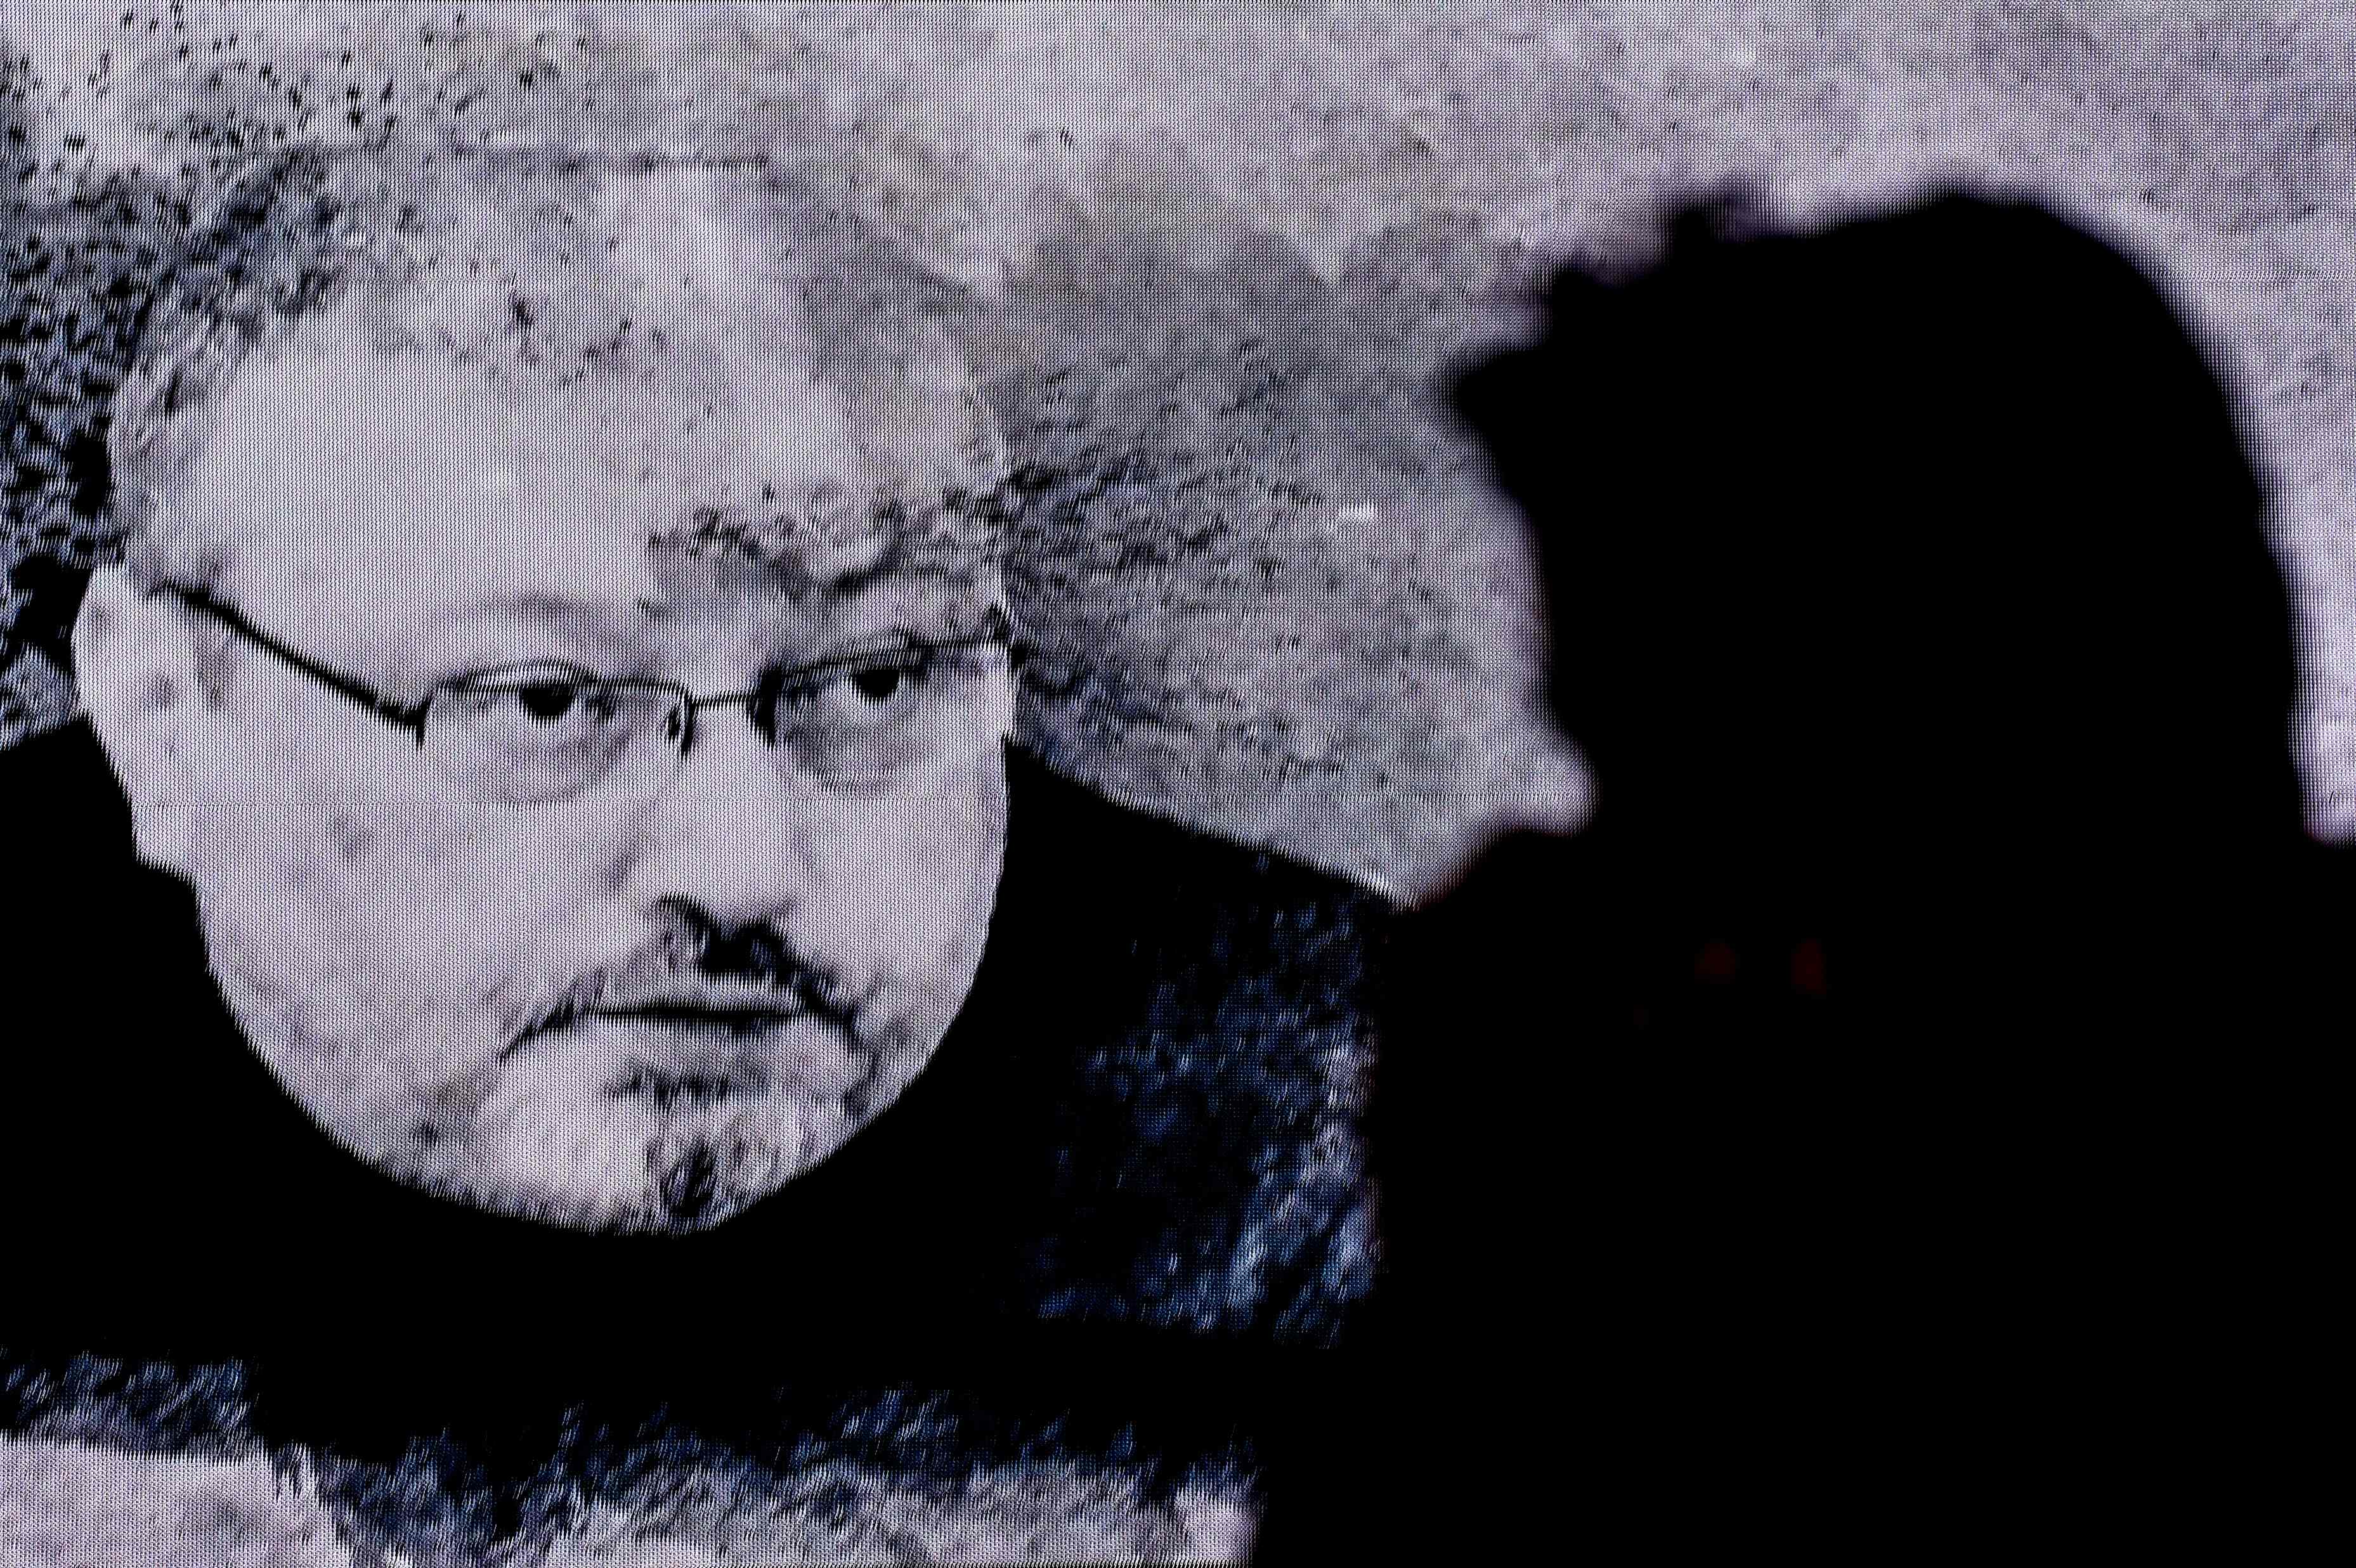 EU no ha llegado a una "conclusión definitiva" sobre la muerte de Khashoggi